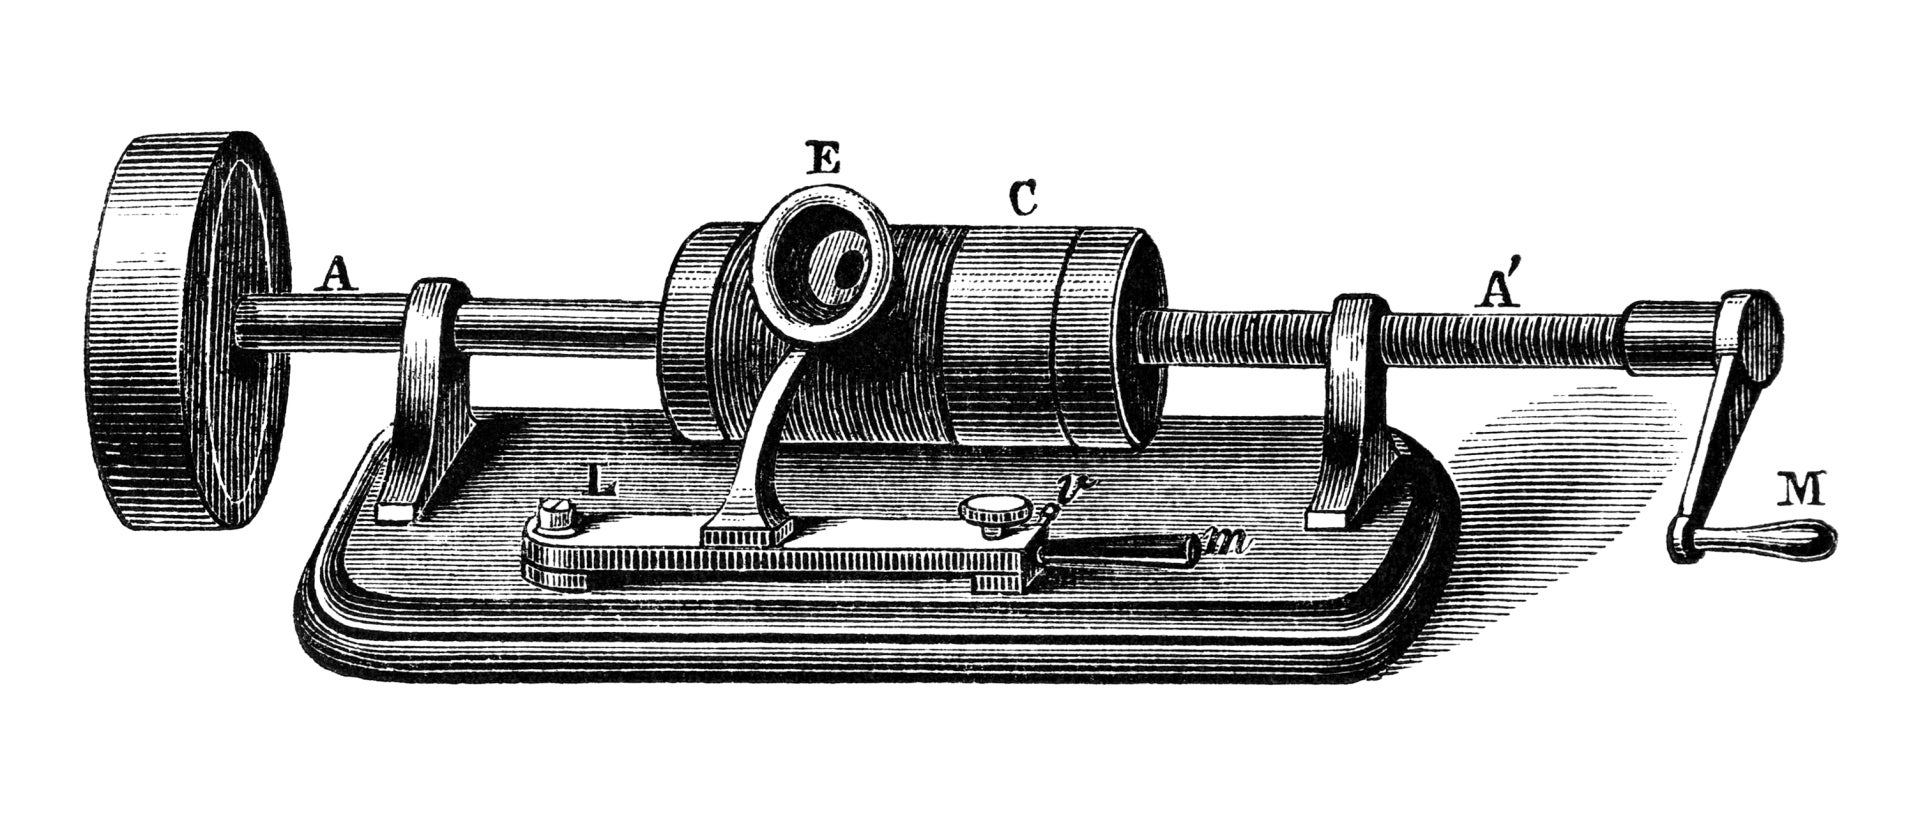 Illustration of Edison phonograph